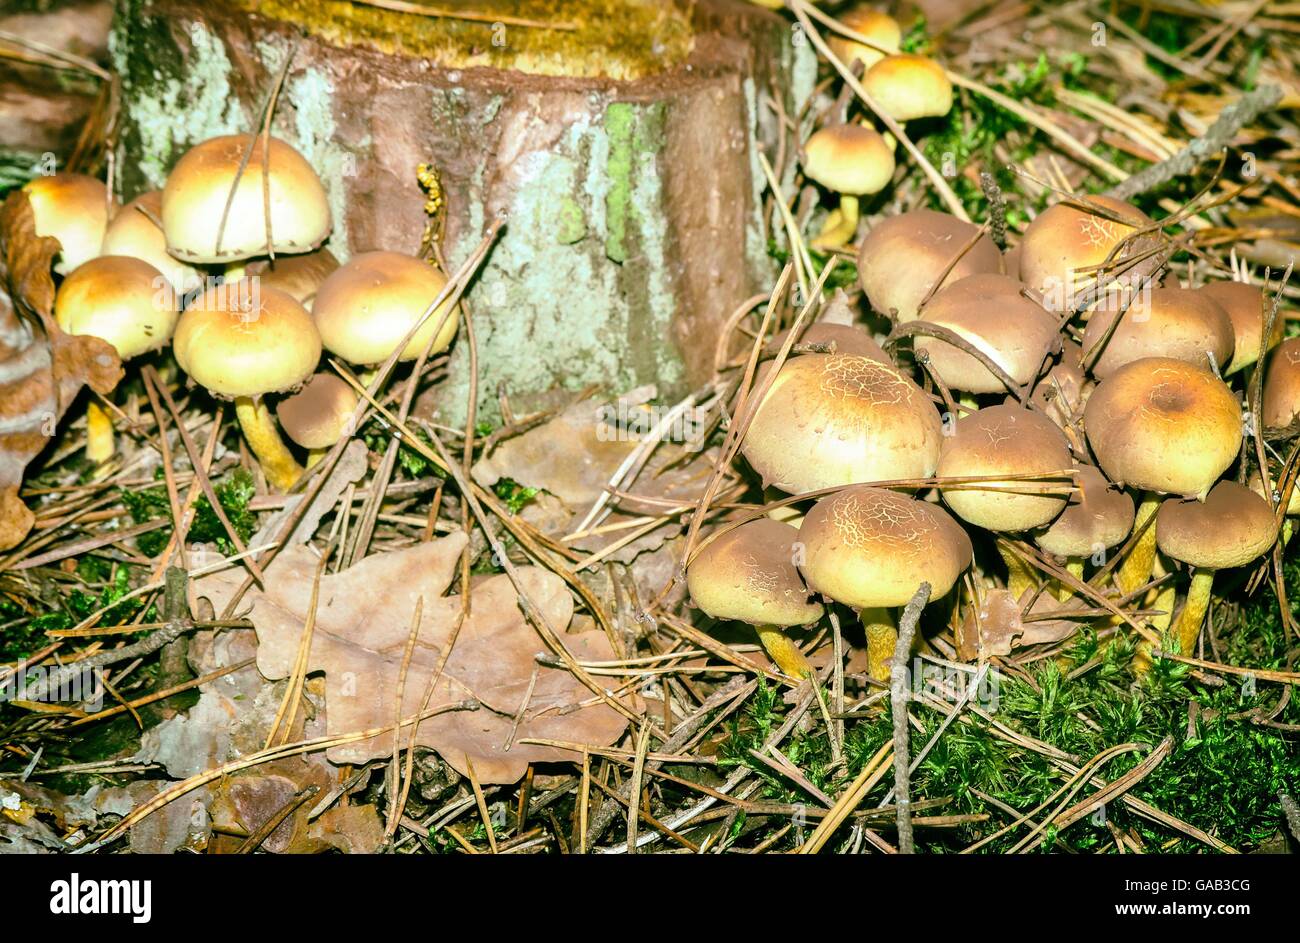 En el bosque cerca del tronco de los árboles crecen hongos venenosos. Son llamados "miel" falso. Foto de stock